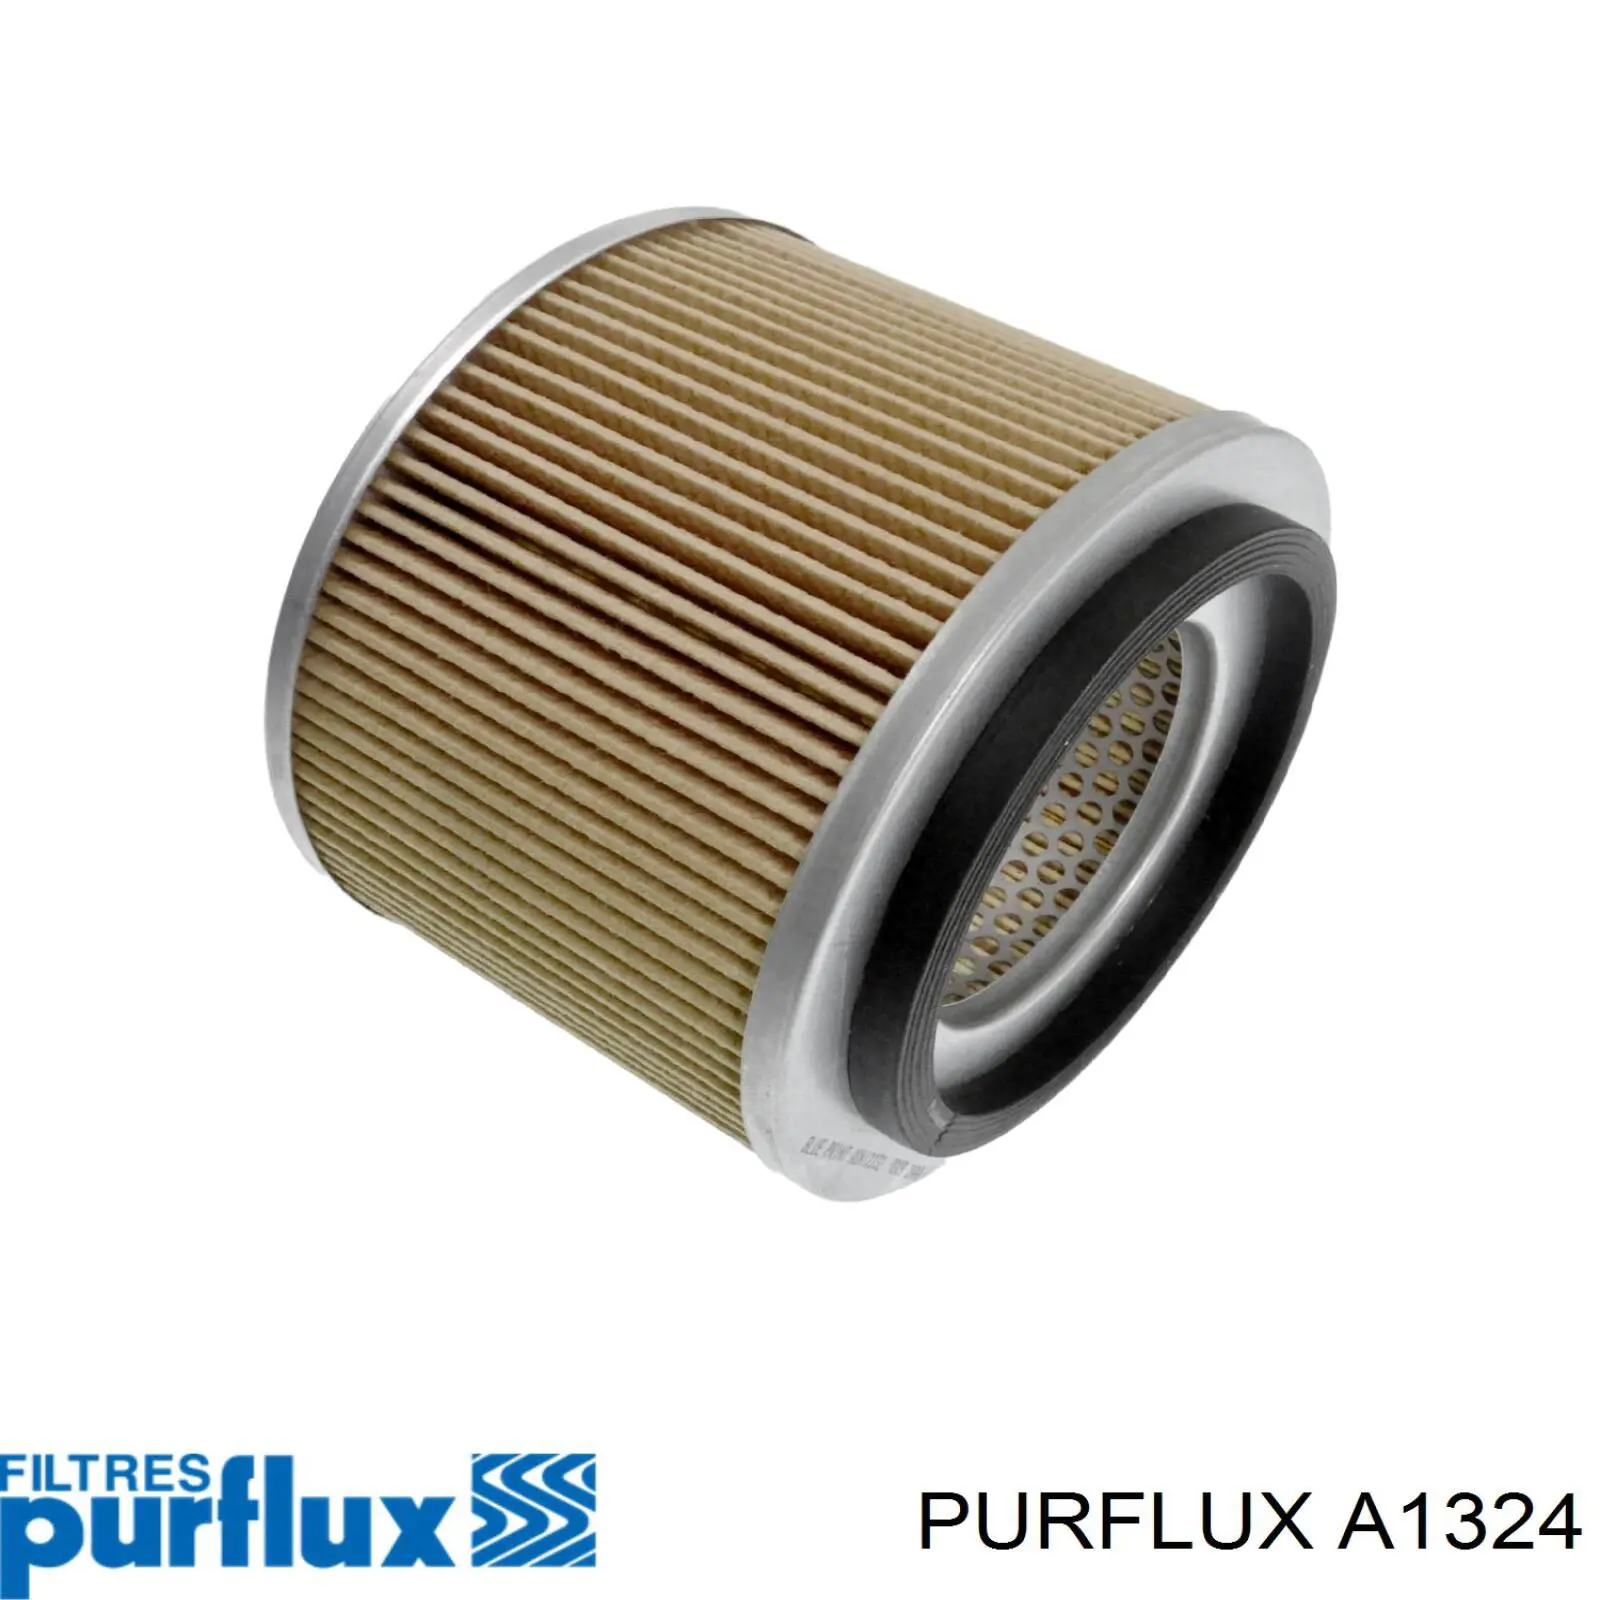 A1324 Purflux filtro de aire